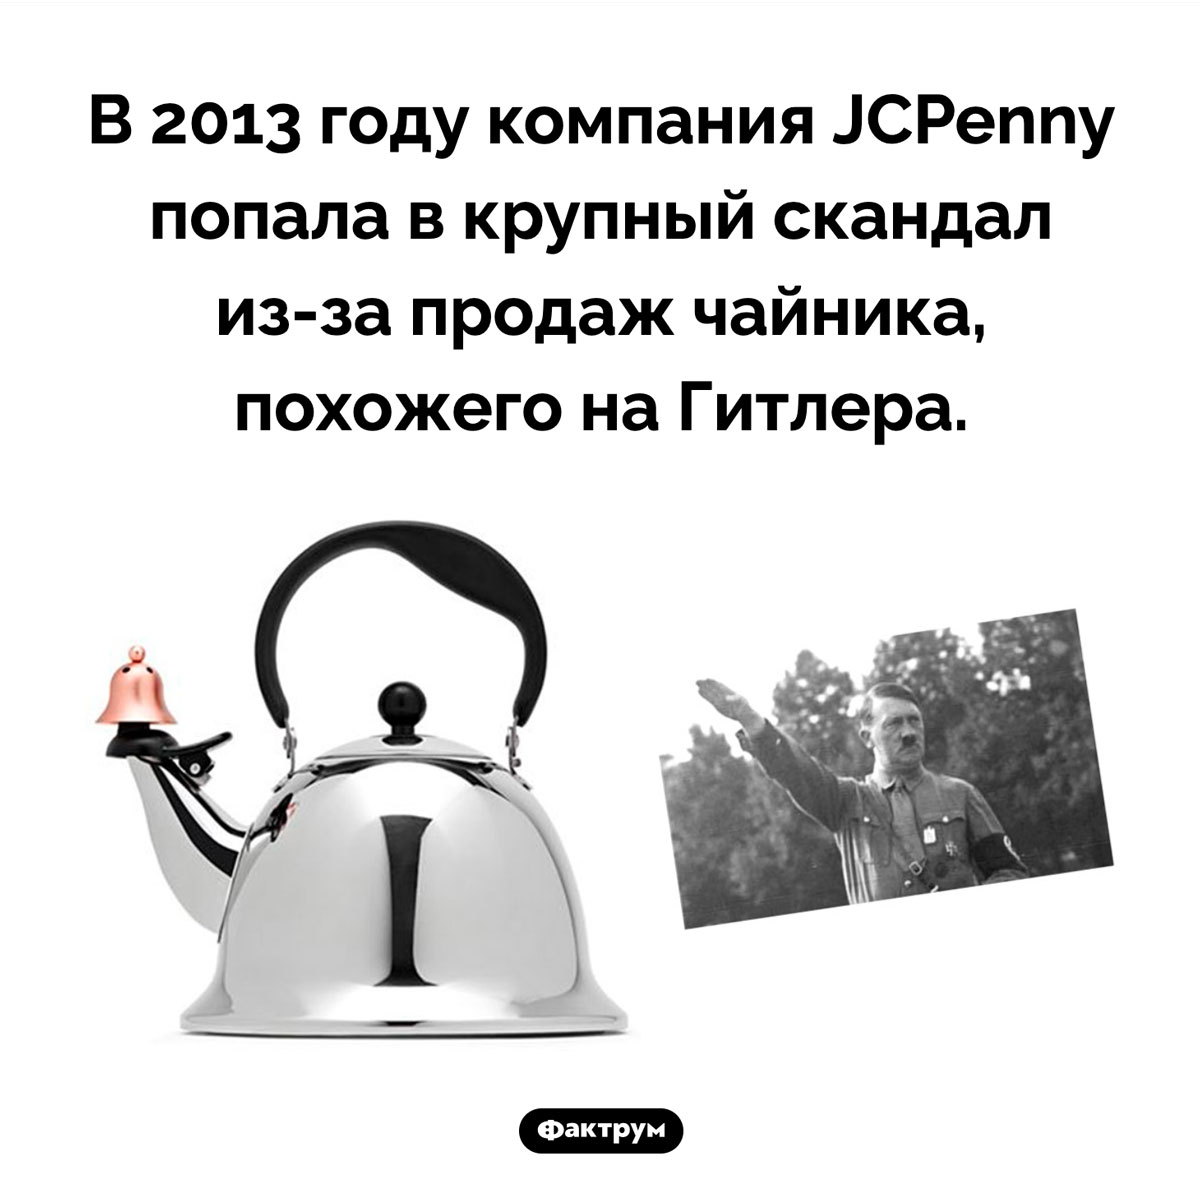 Чайник-Гитлер от JCPenny. В 2013 году компания JCPenny попала в крупный скандал из-за продаж чайника, похожего на Гитлера.